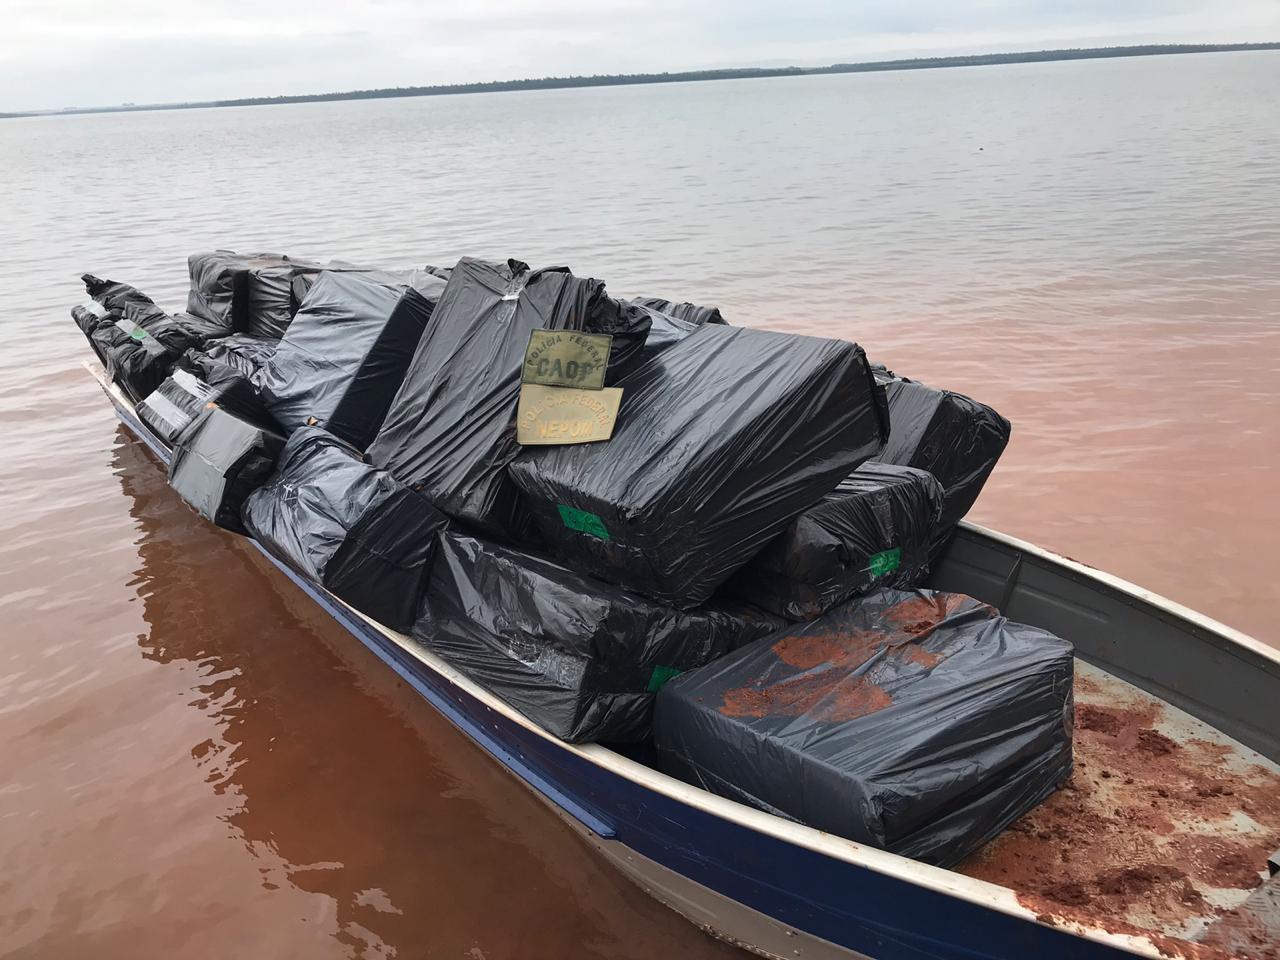  Embarcações clandestinas são apreendidas no Lago Itaipu e Rio Paraná